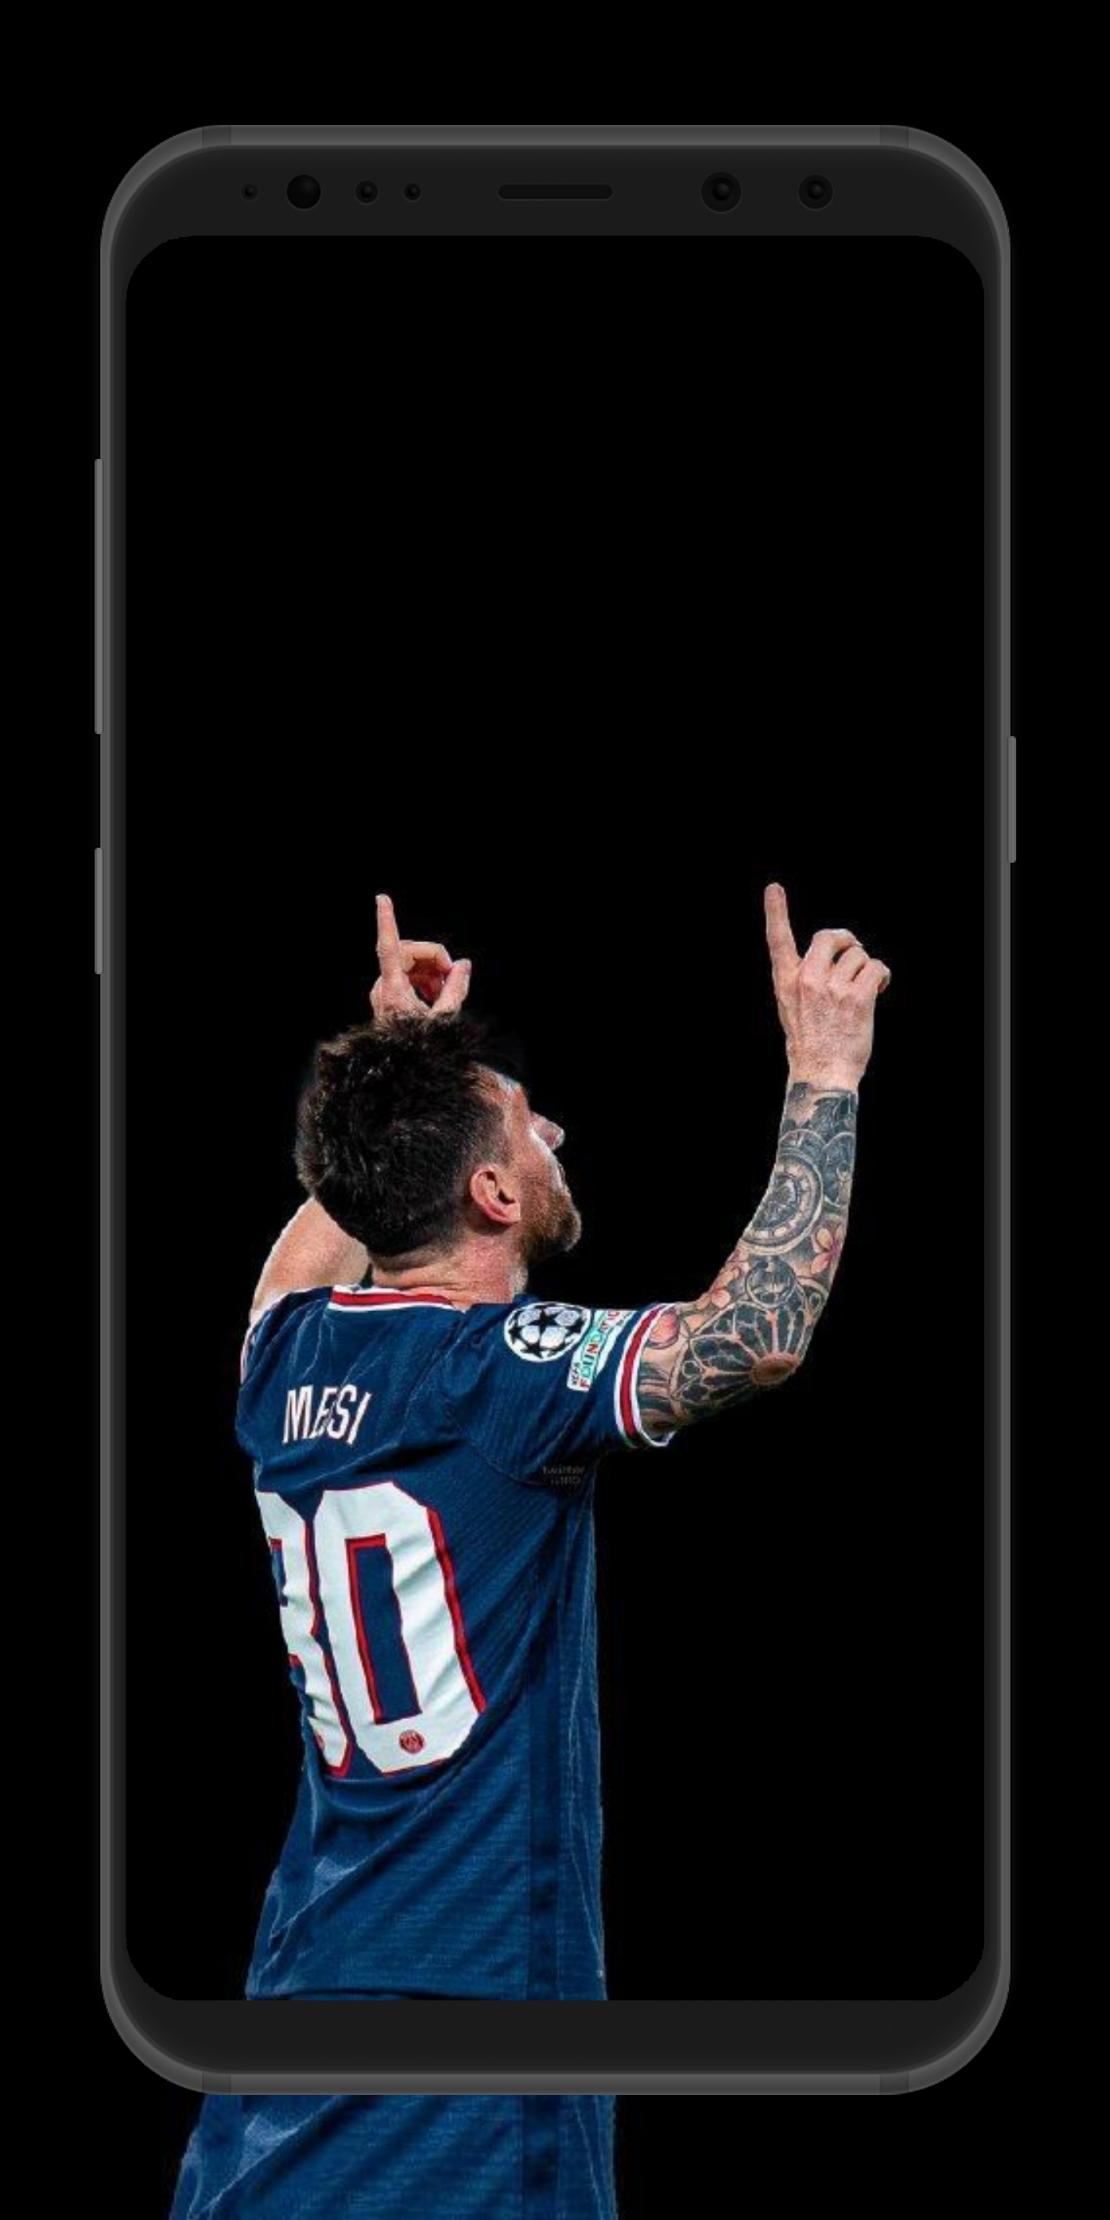 Bạn muốn sở hữu một bức hình nền độc đáo về Lionel Messi trong áo đấu PSG? Đừng bỏ lỡ cơ hội tải xuống APK chính thức của Messi Psg Wallpaper cho Android và cùng chiêm ngưỡng tài năng của siêu sao này ngay trên điện thoại của bạn nhé!